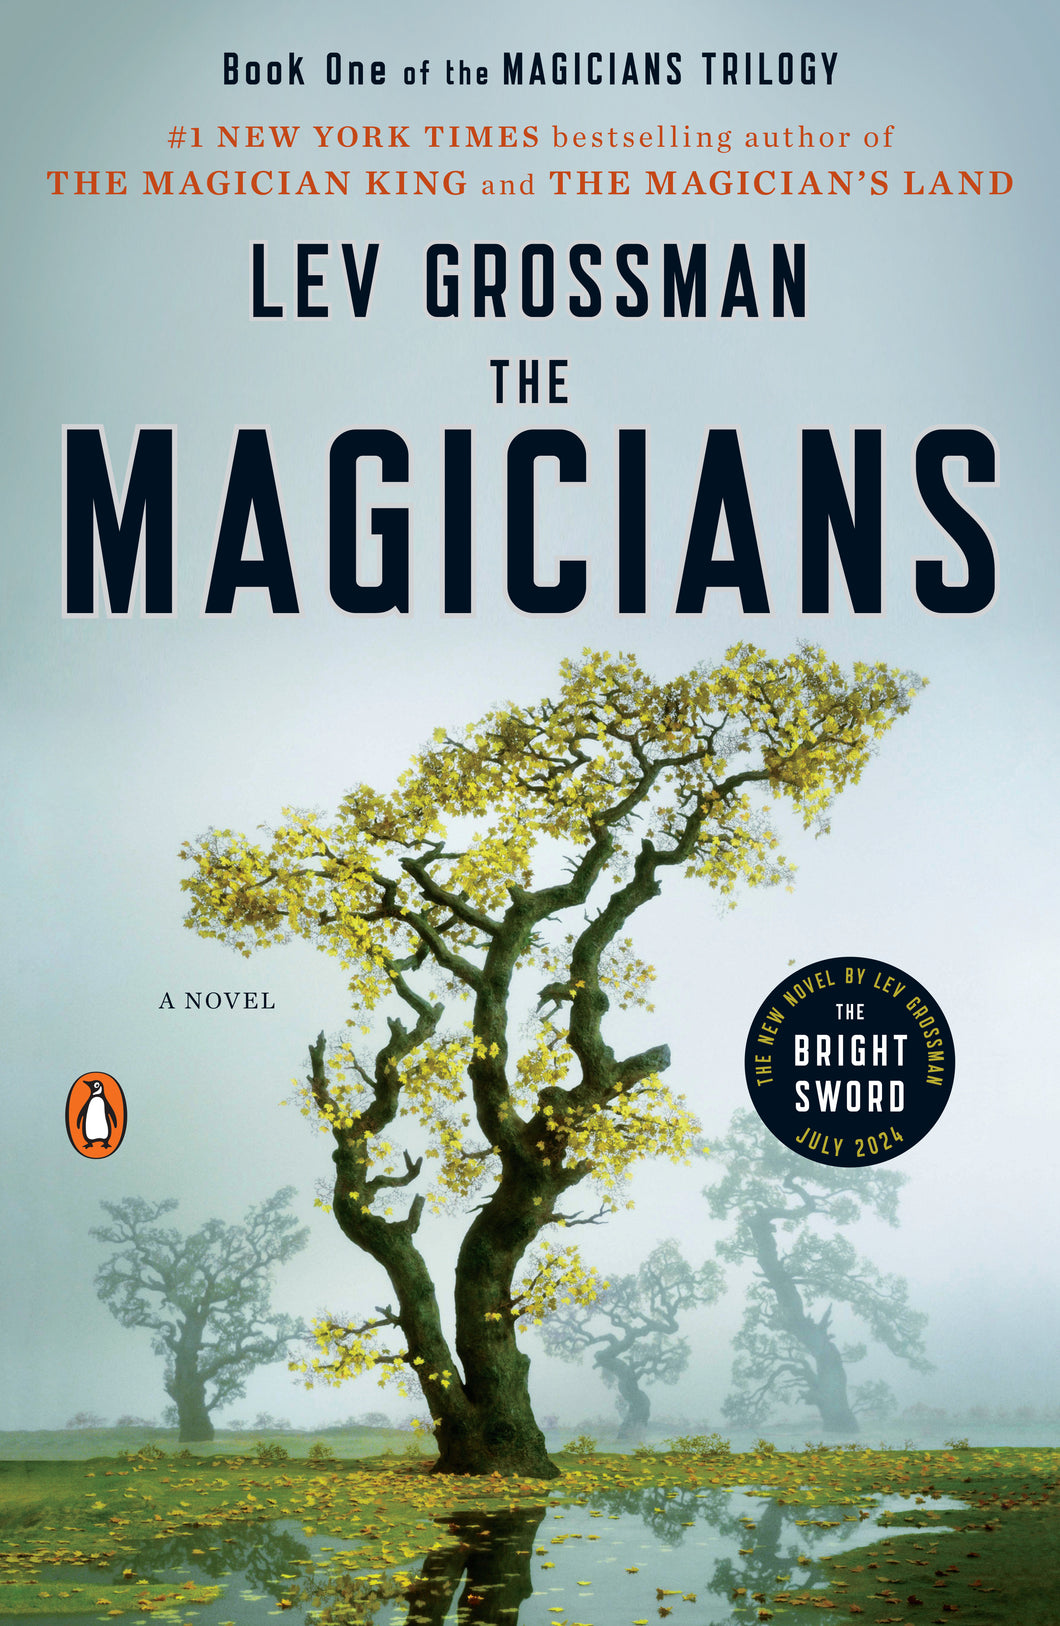 The Magicians: A Novel